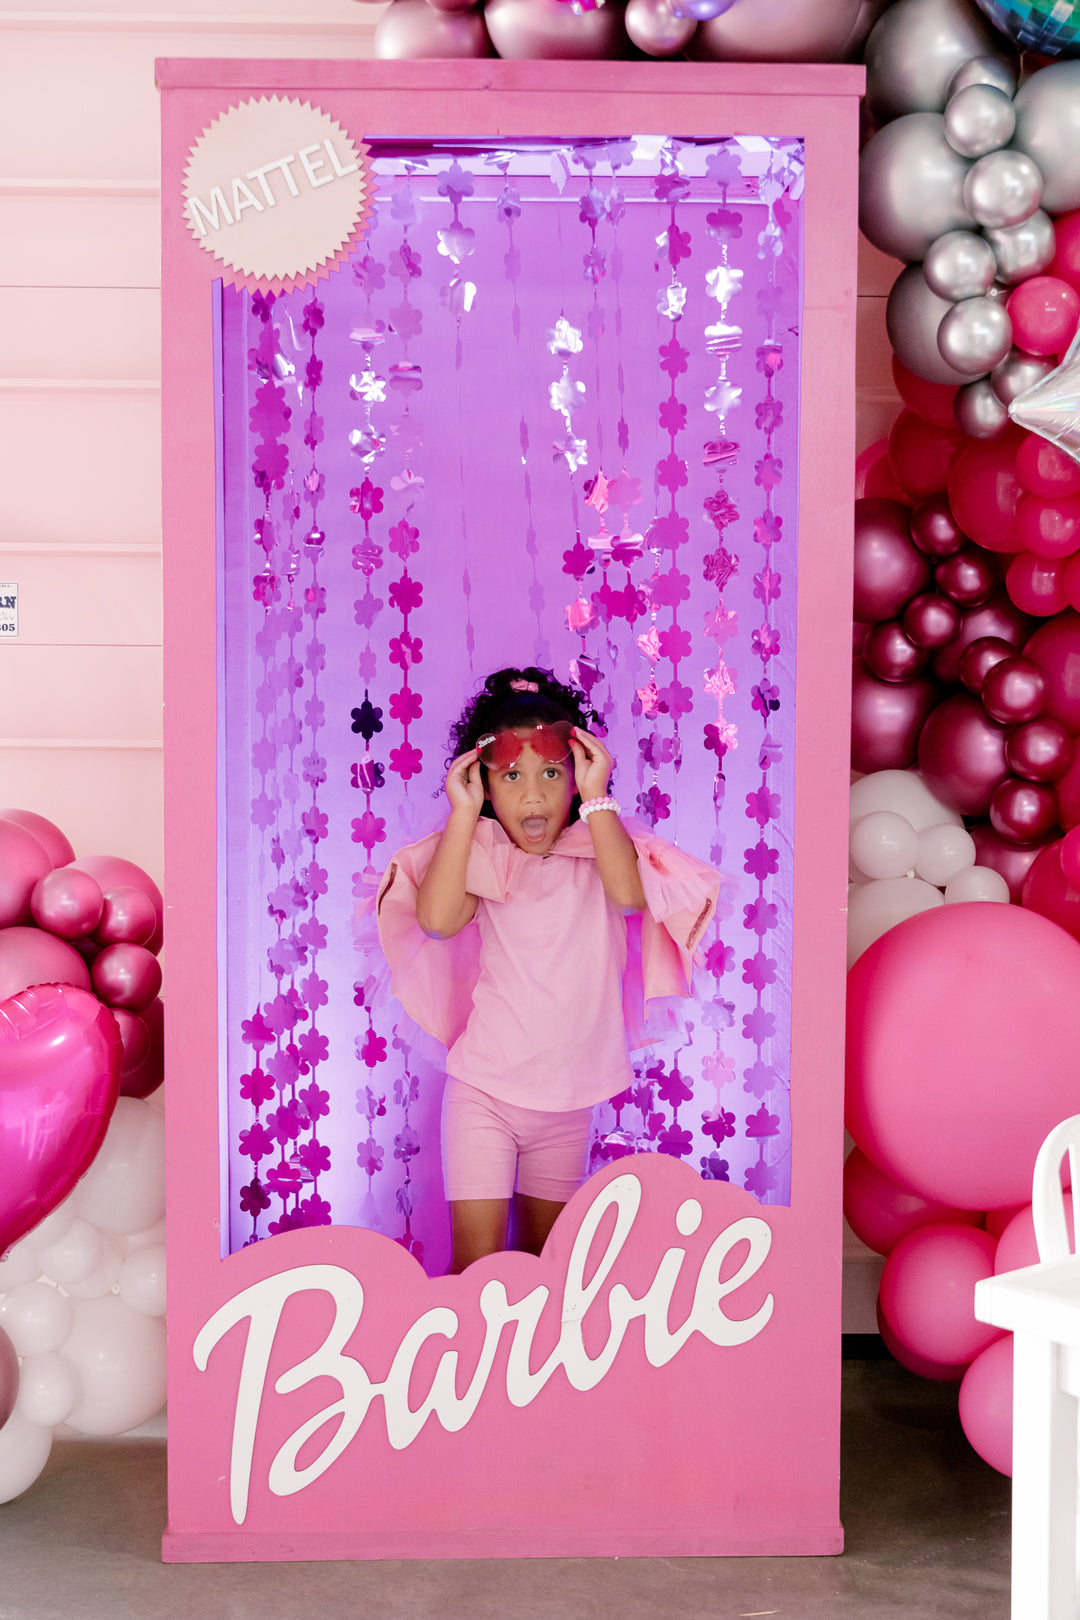 Barbie Theme Party Decorations Ideas